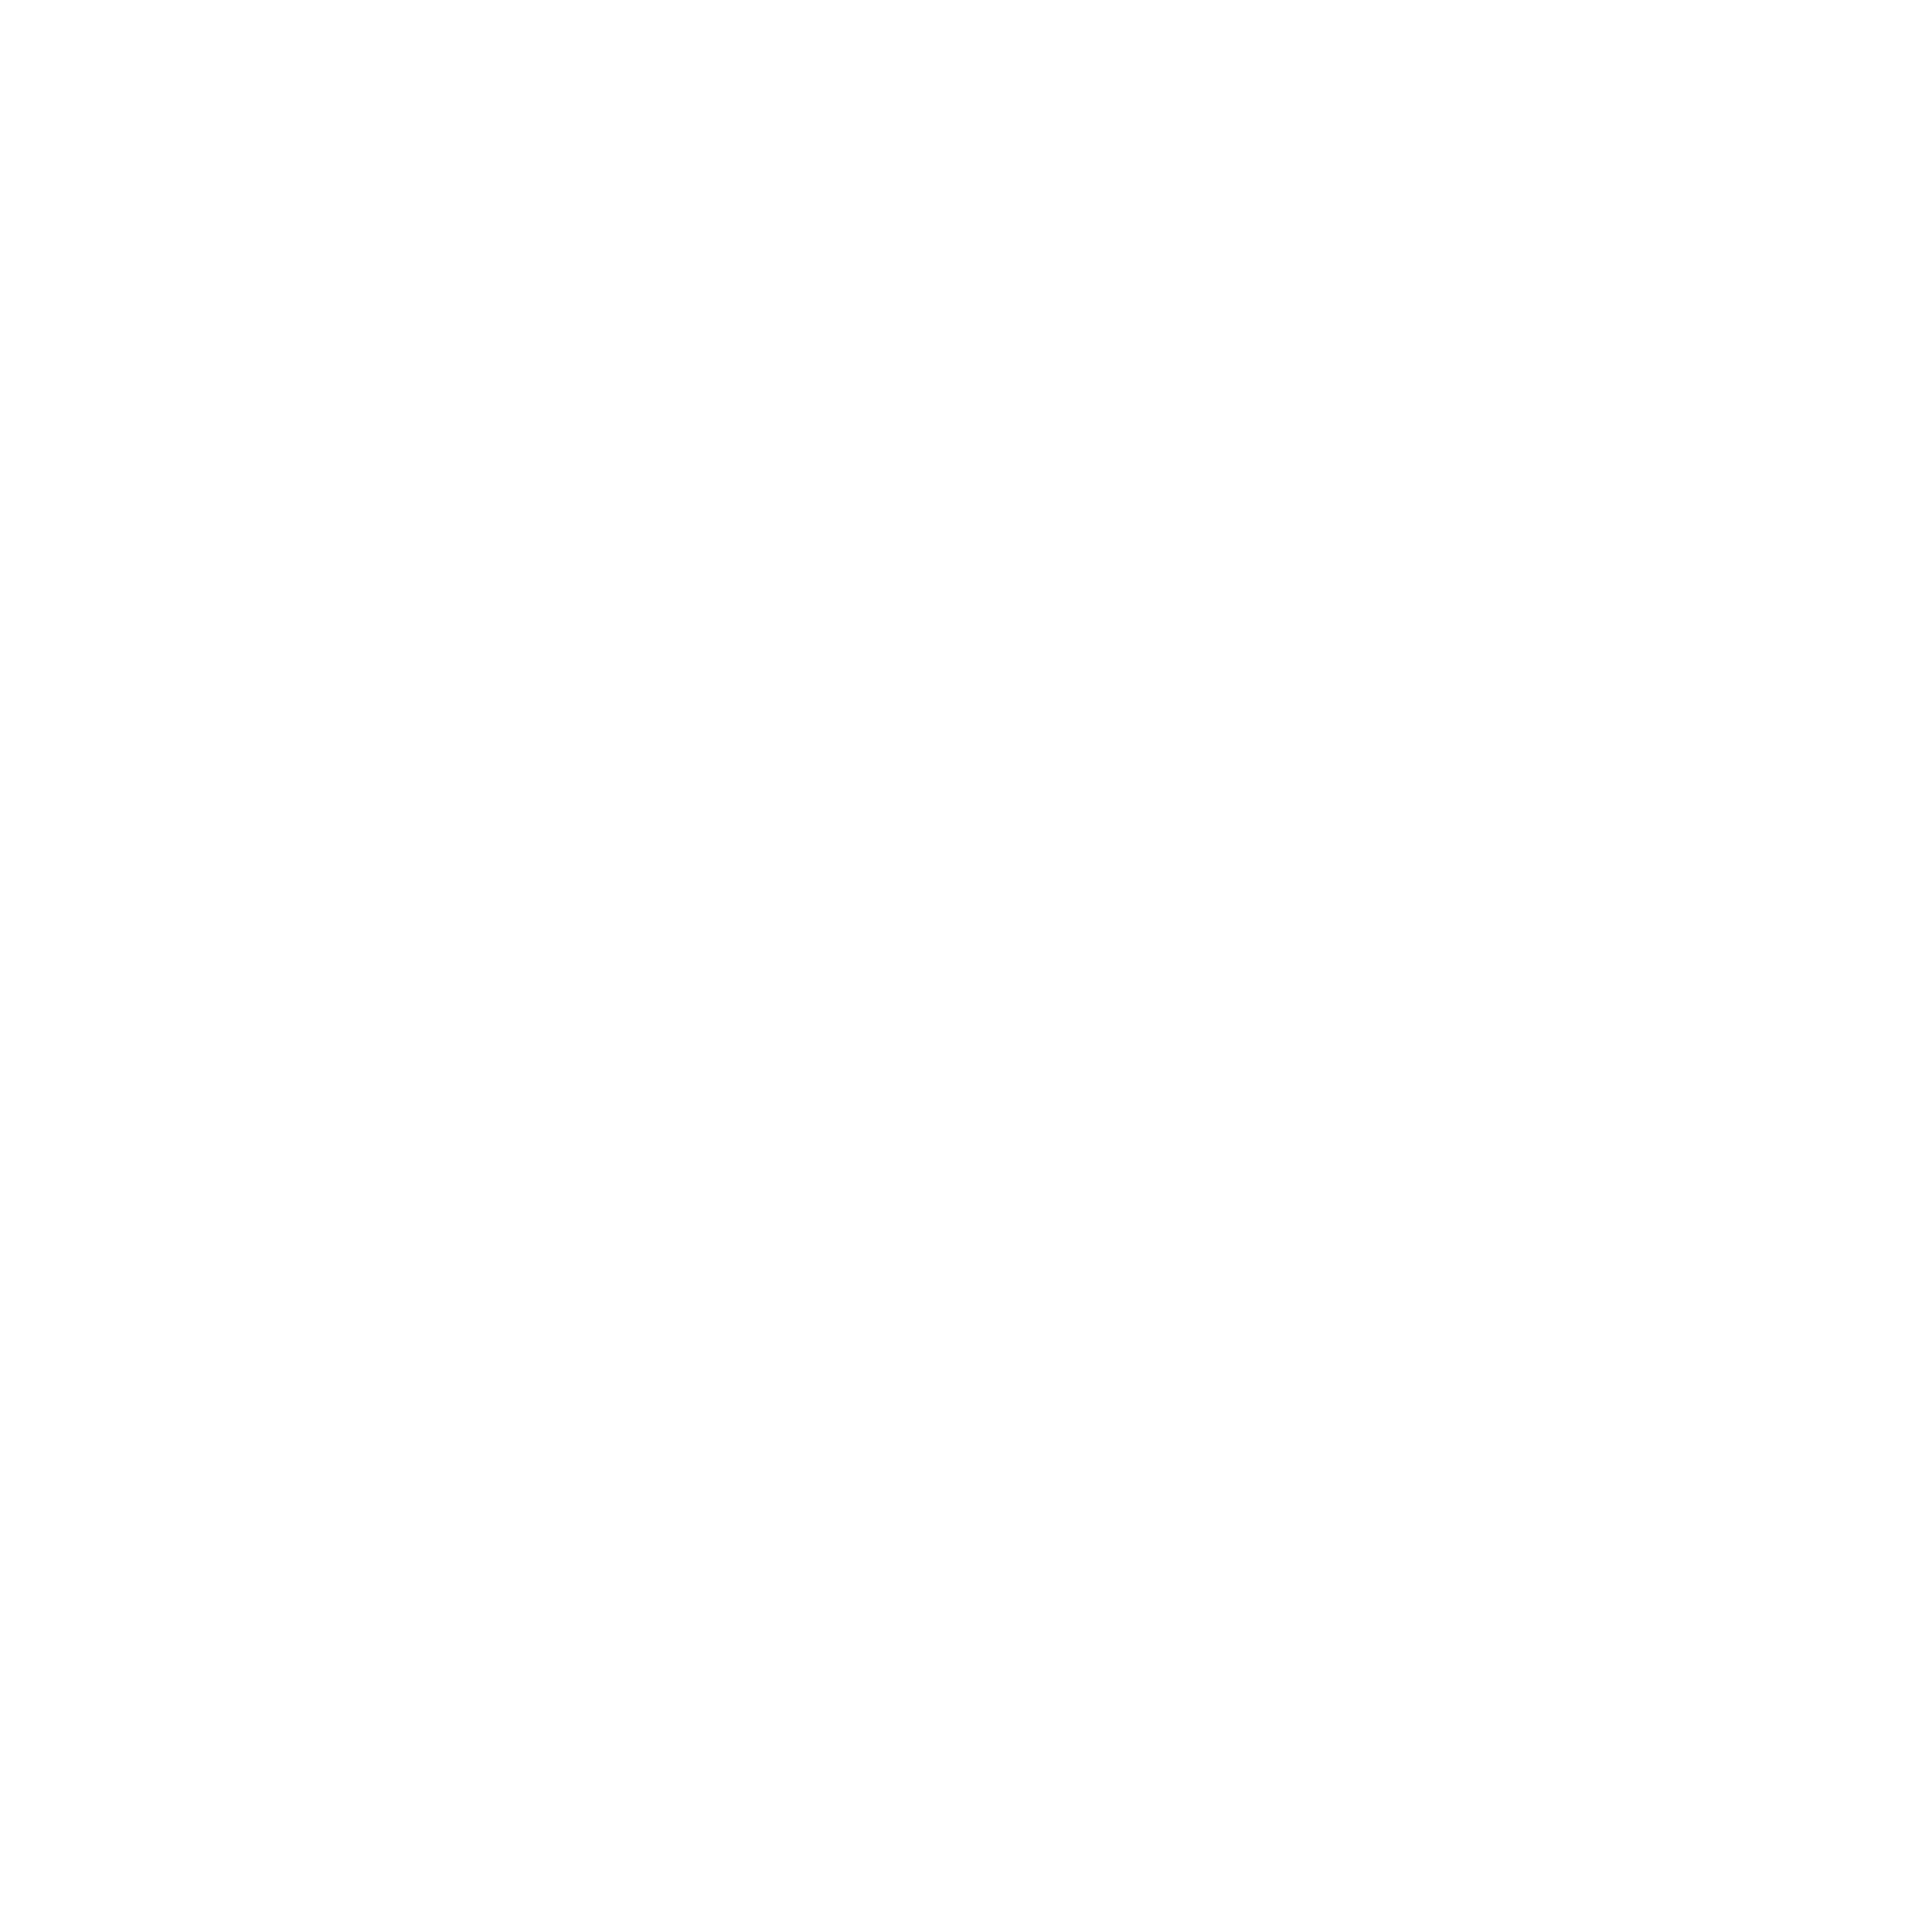 ALF Bakery